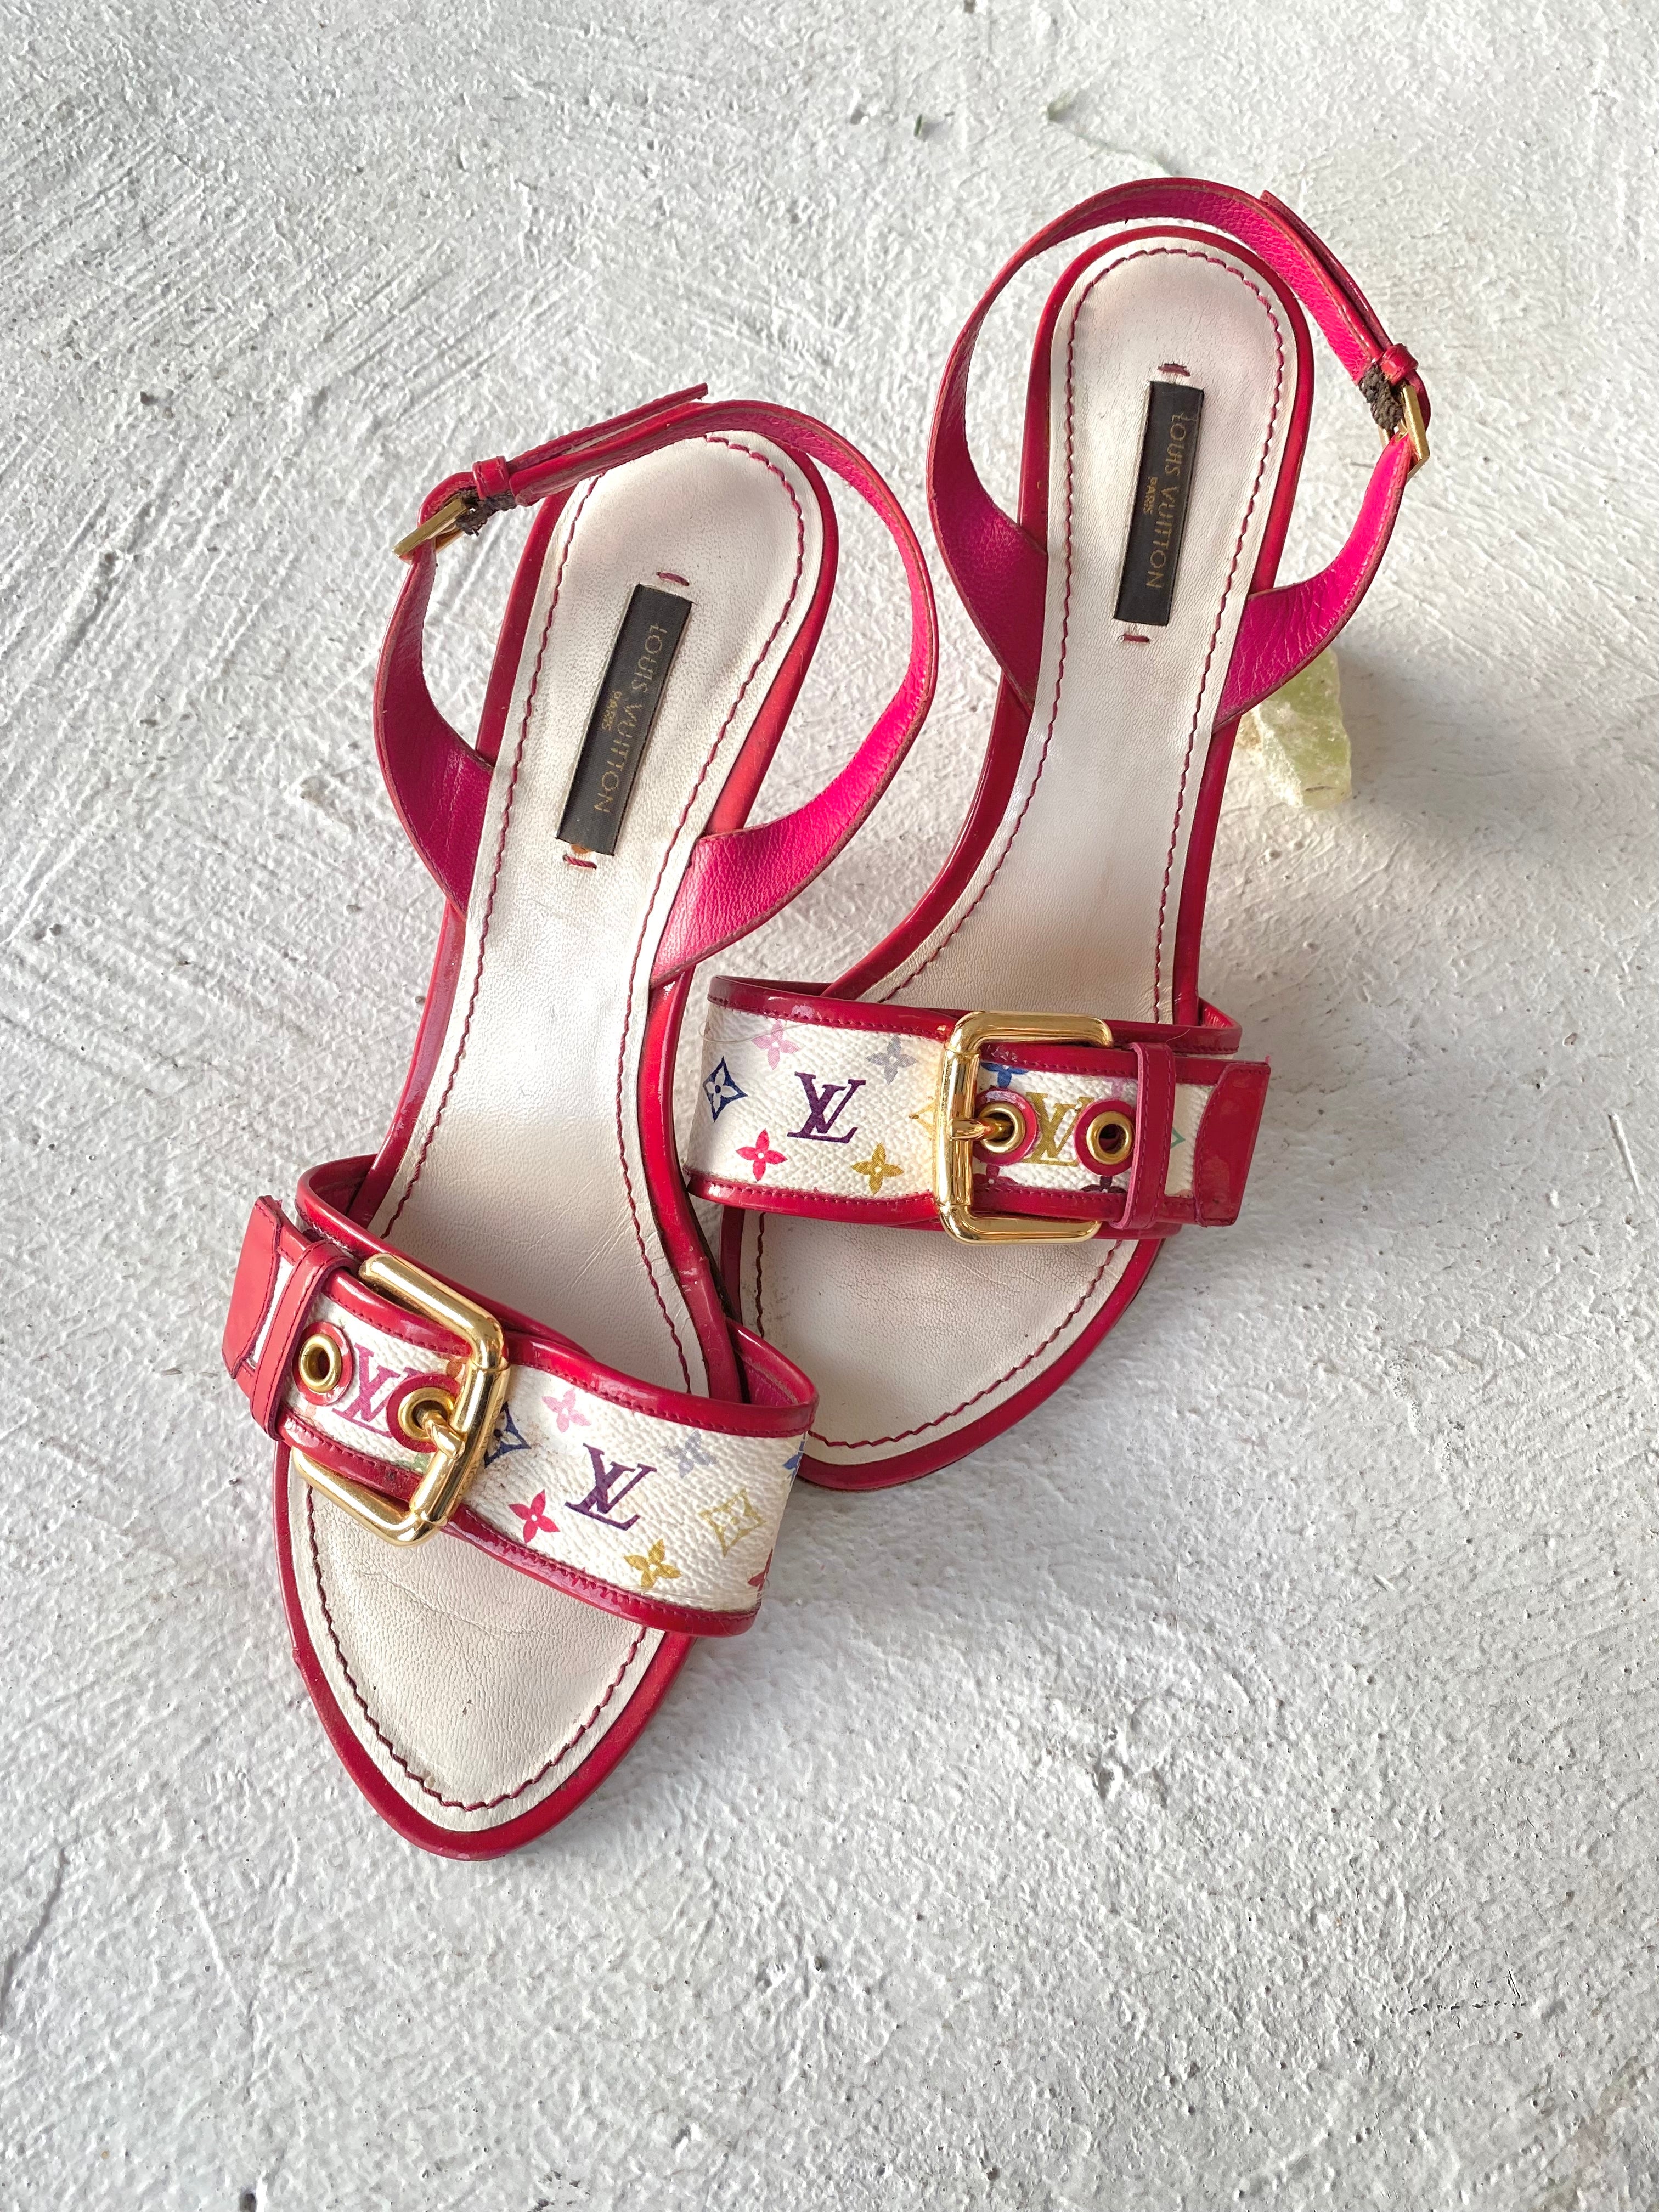 Louis Vuitton White Monogram Multicolor Ankle Strap Heels, size 37.5/6.5